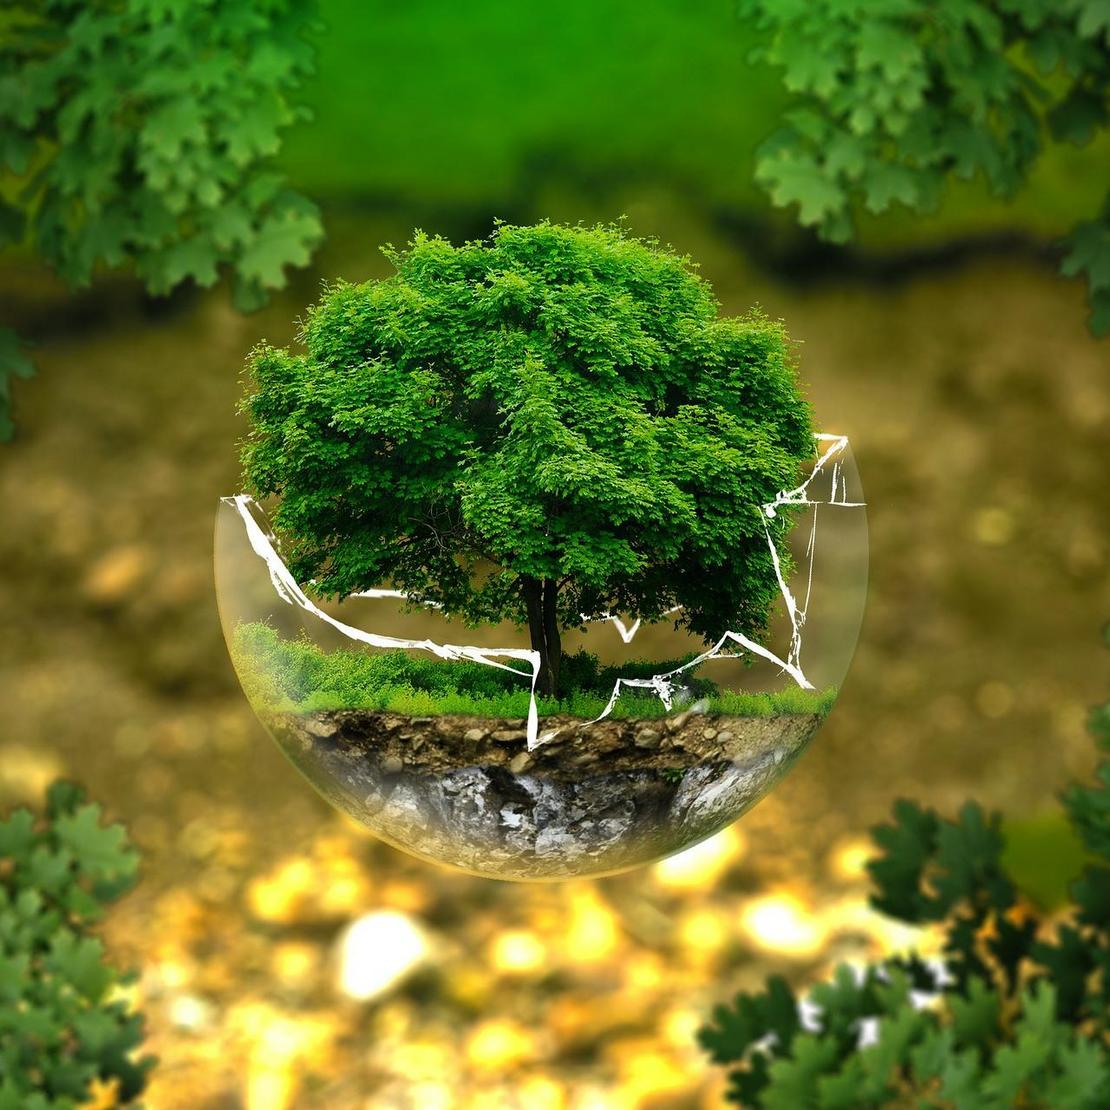 Angedeutete Erde mit Baum als Synonym für den Umweltschutz